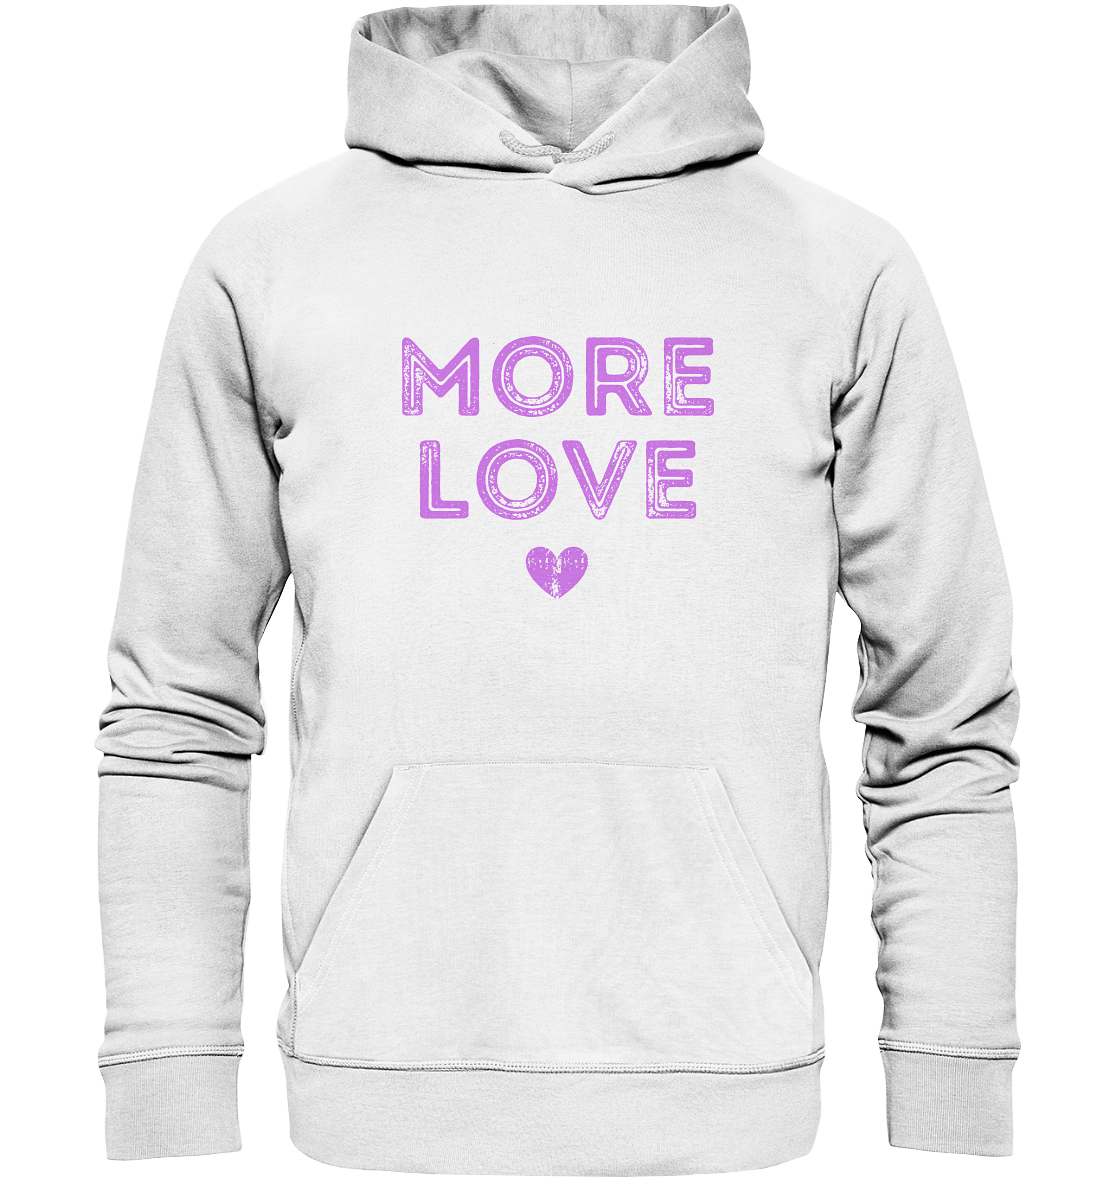 More Love | Premium Organic Unisex Hoodie